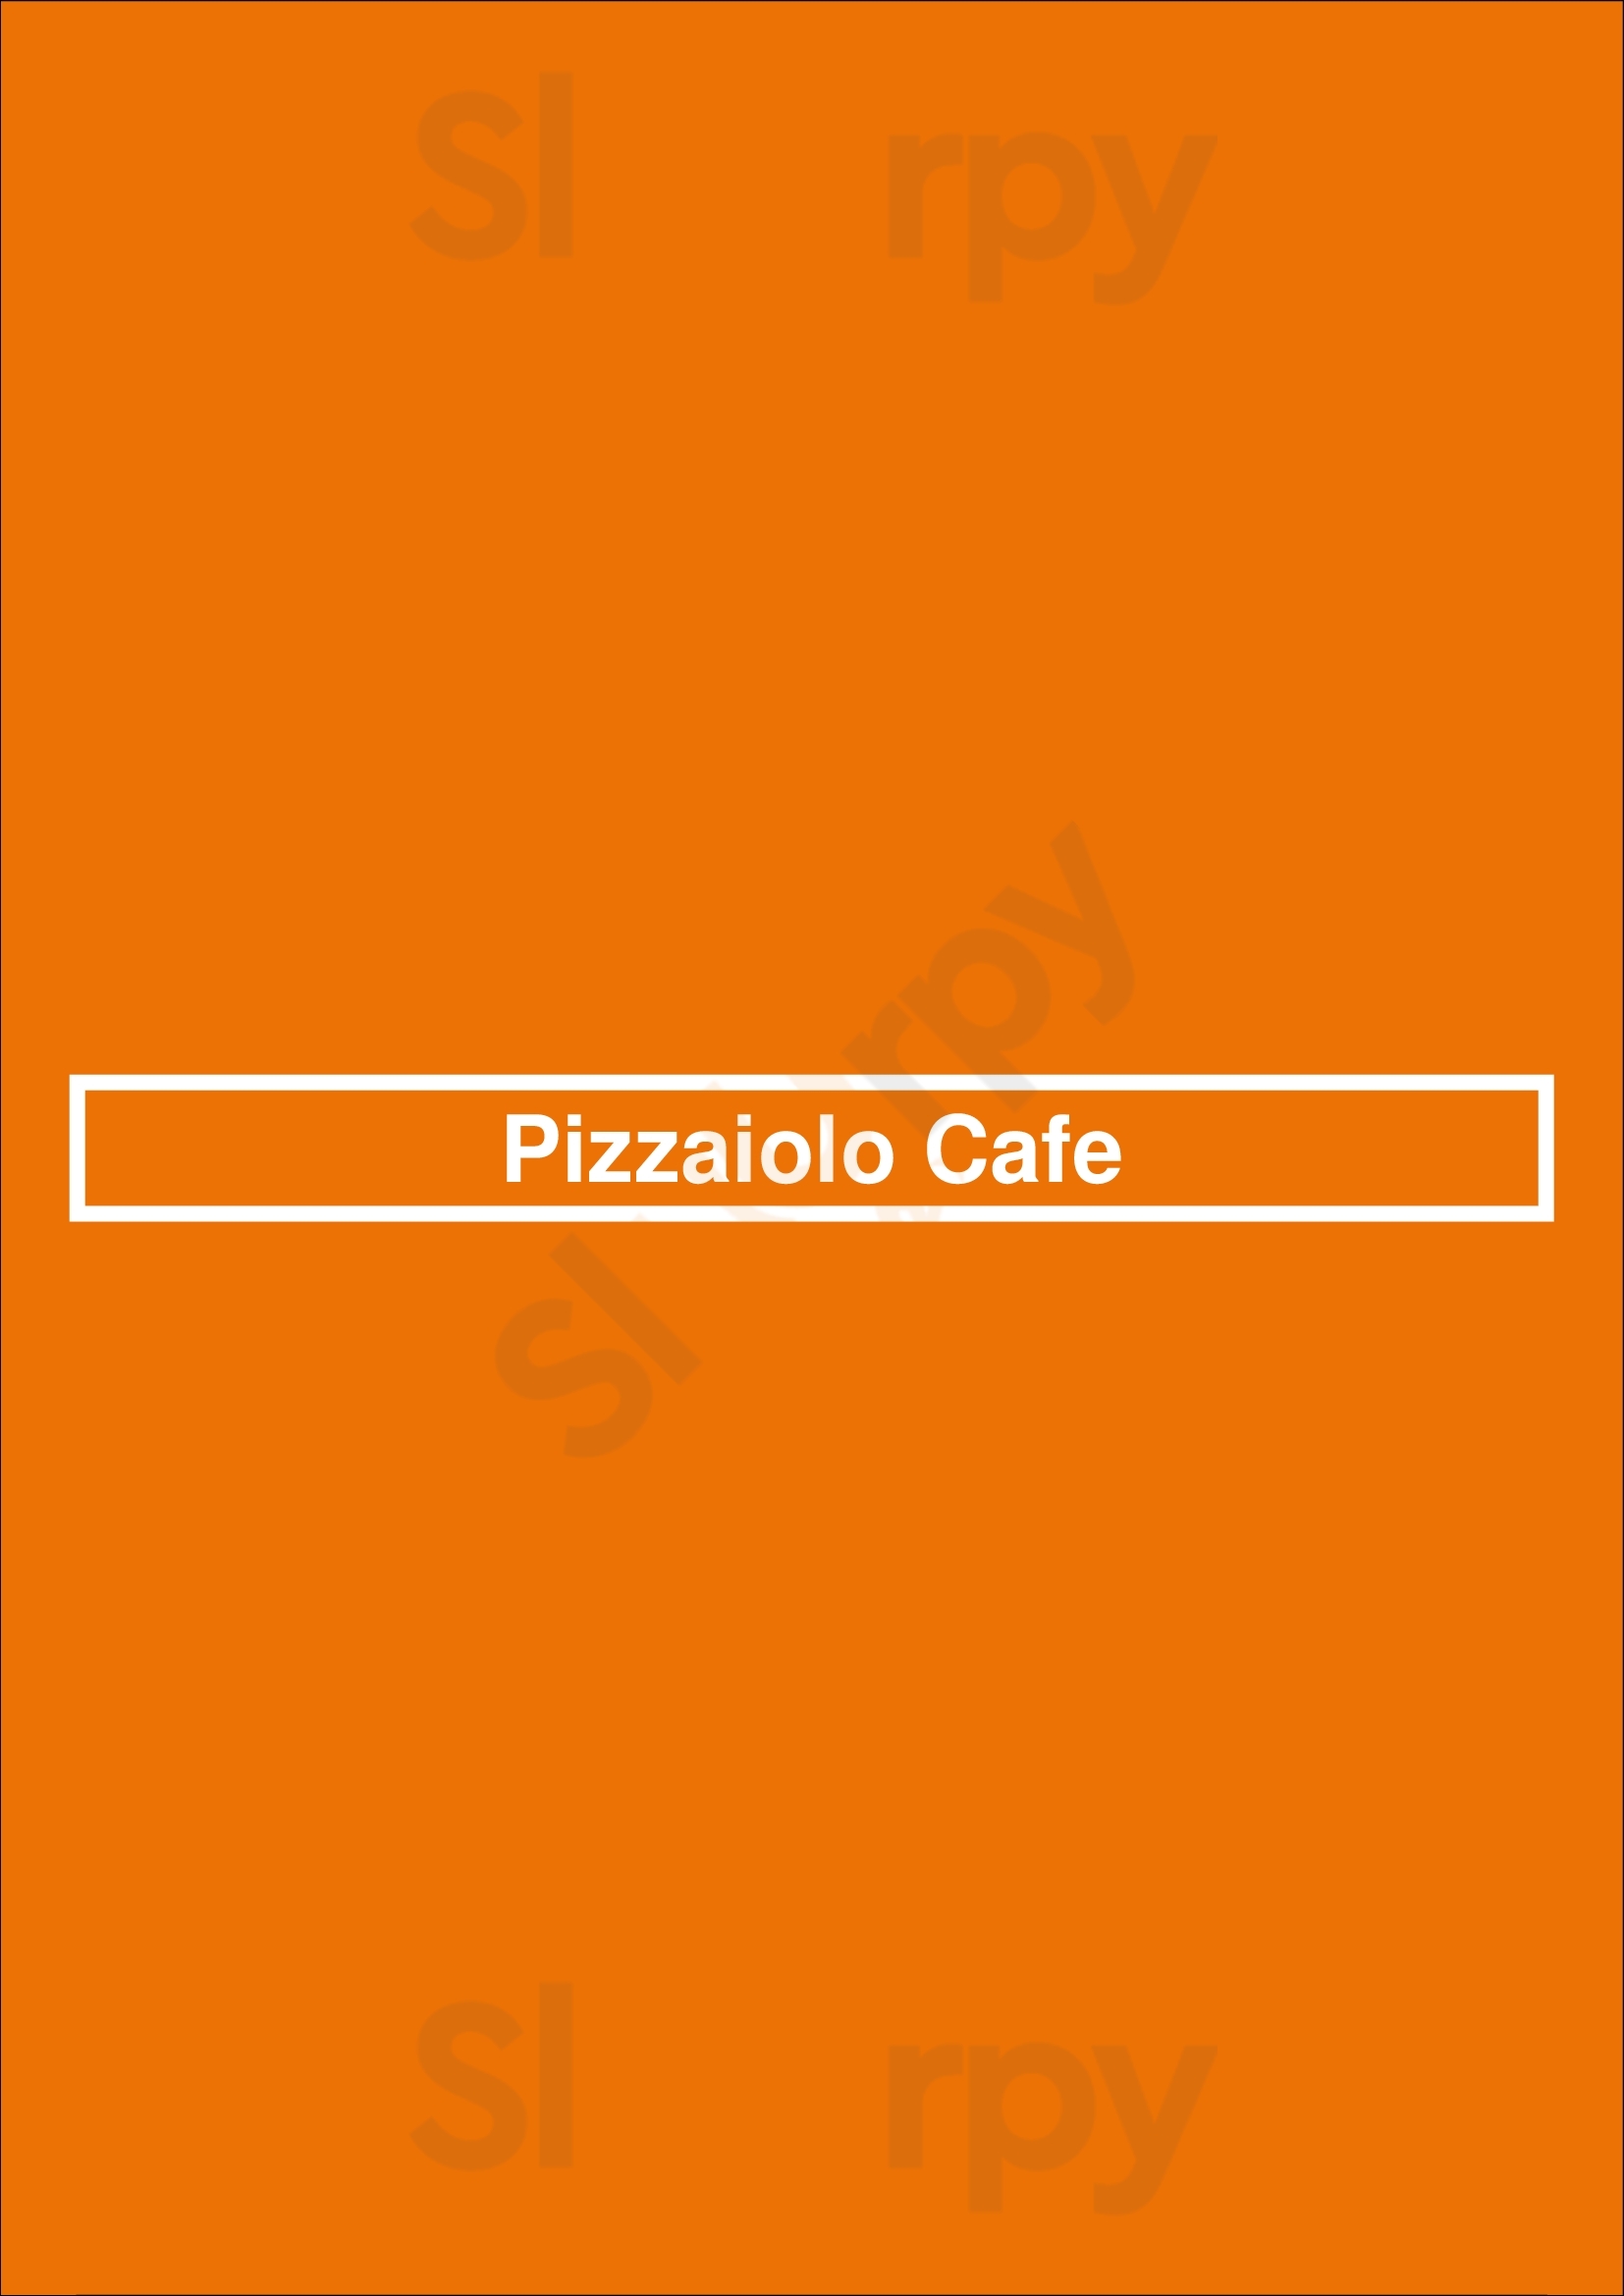 Pizzaiolo Cafe Alexandria Menu - 1